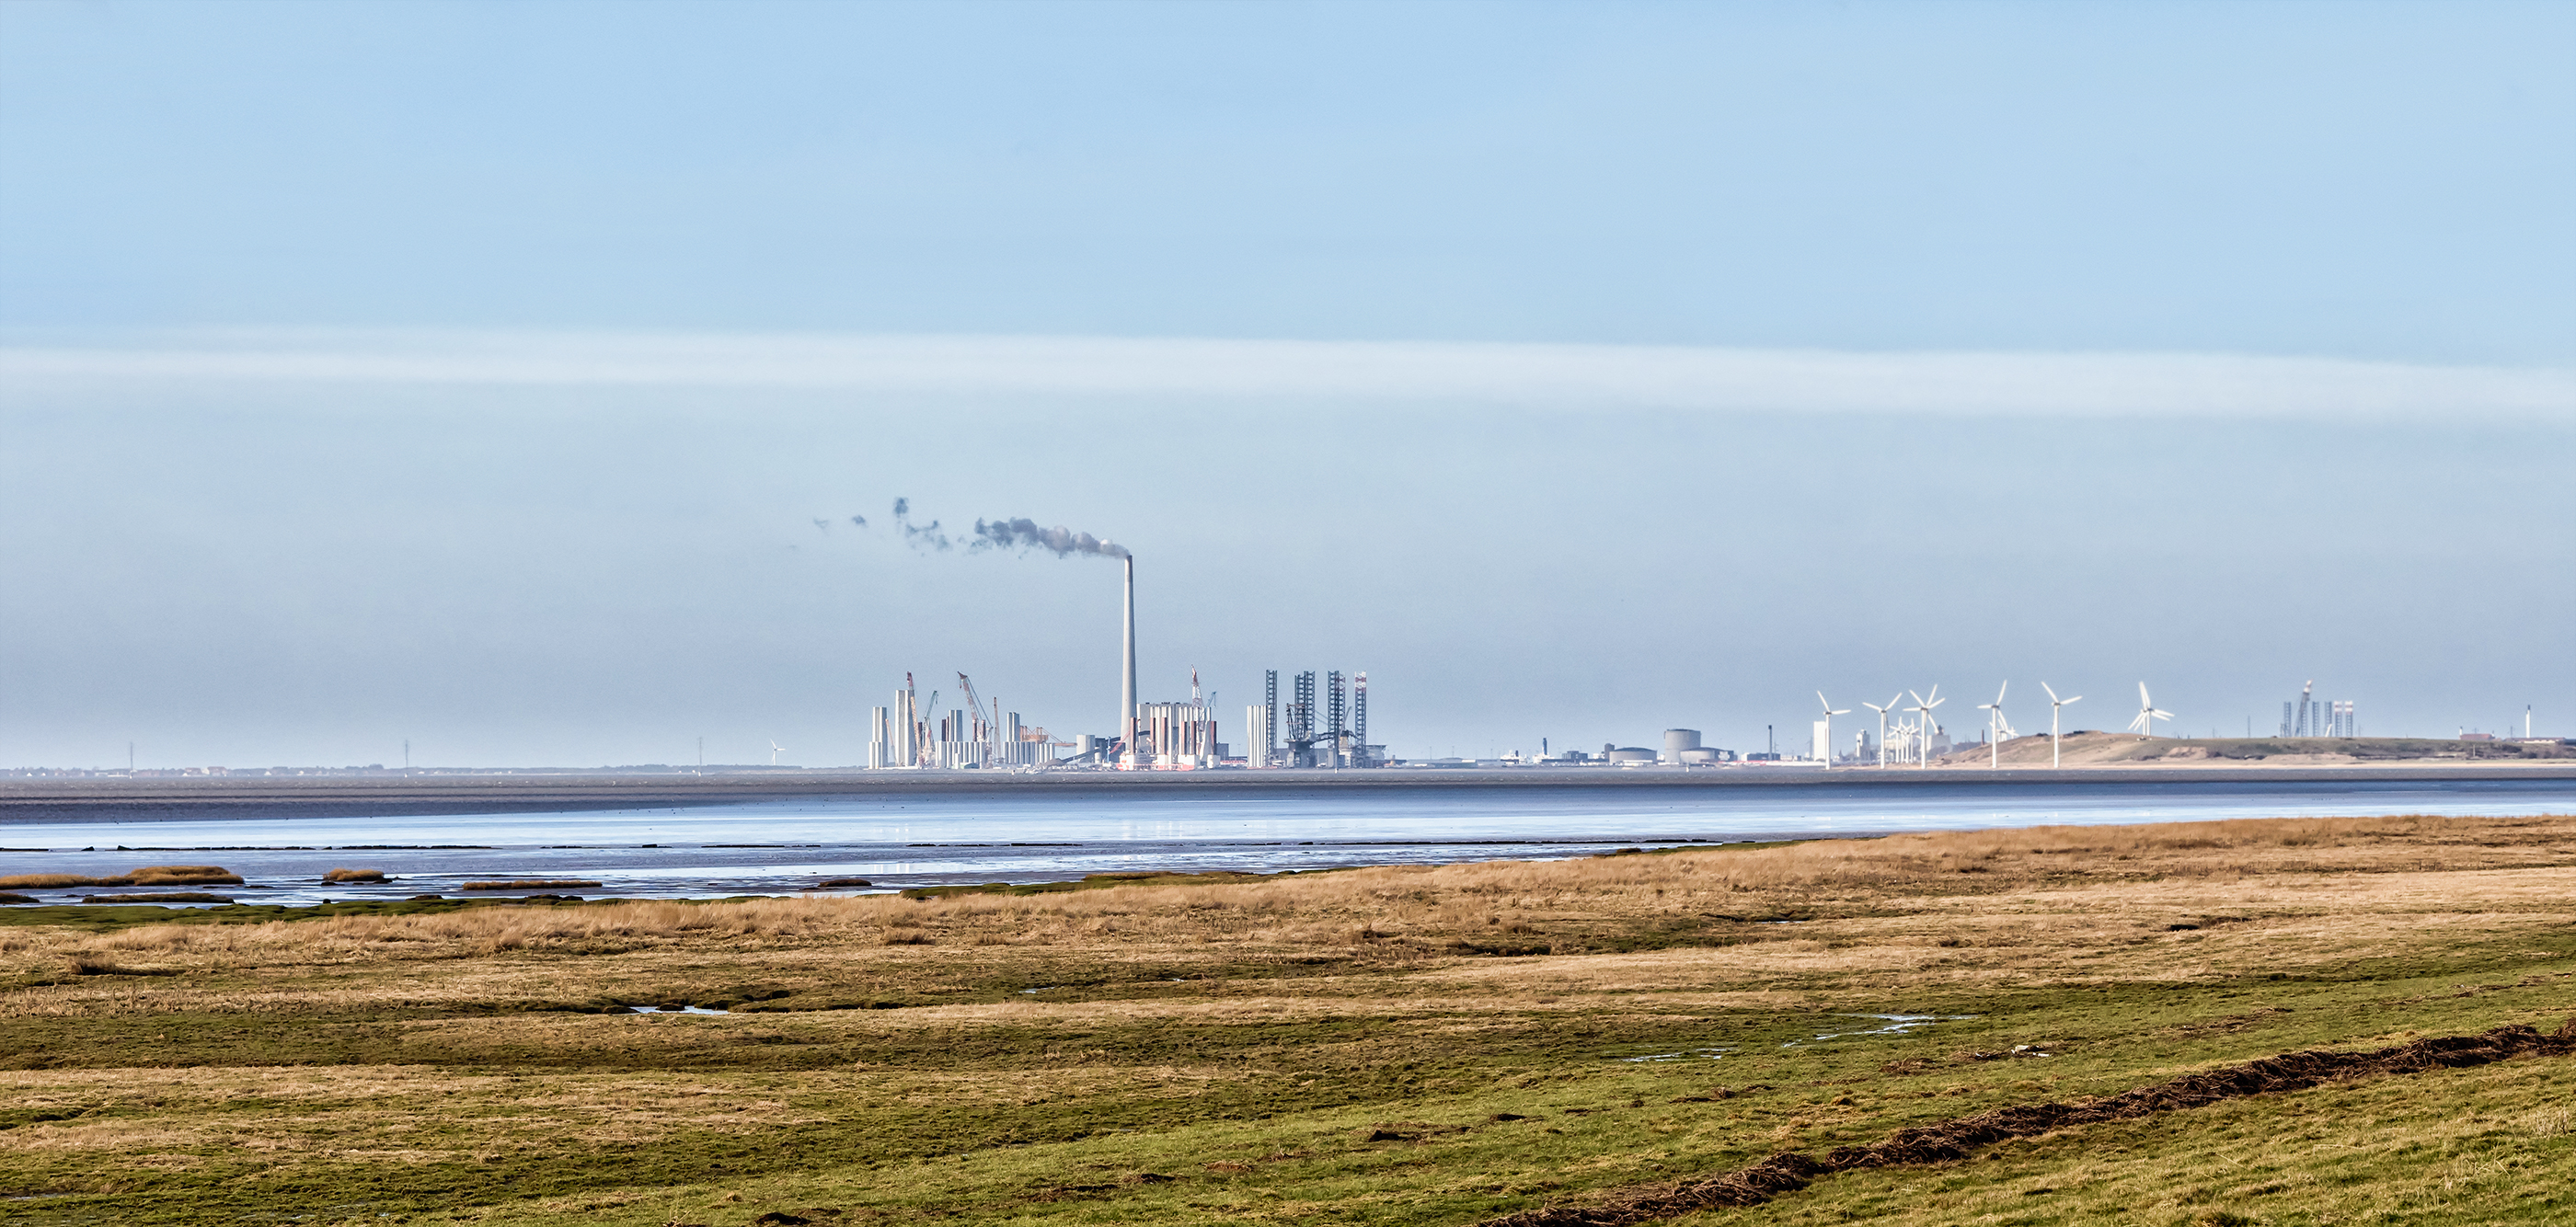 Dánský Esbjerg je pro evropský průmysl větrné energie důležitým místem.